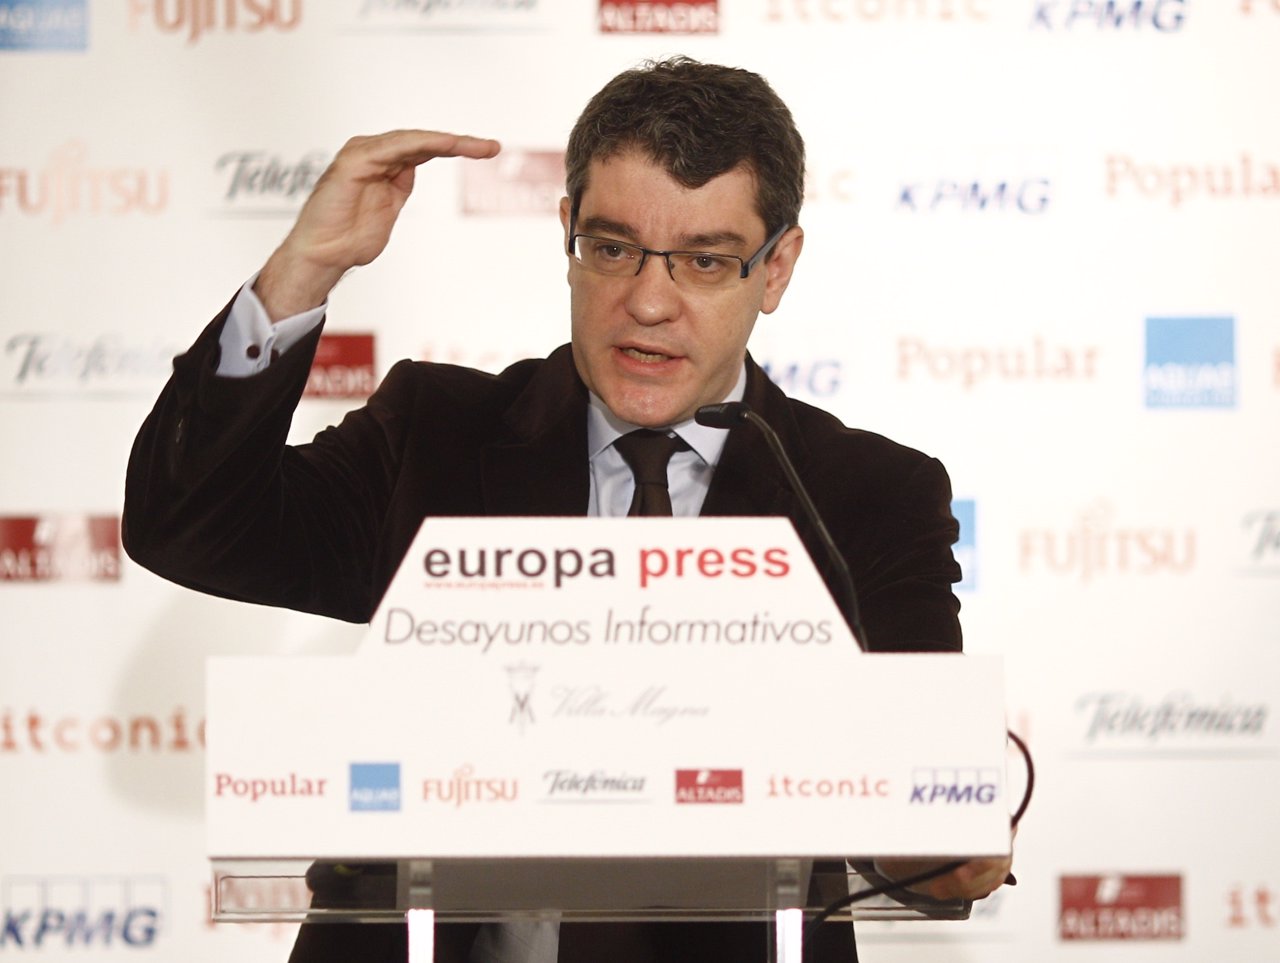 Desayuno de Europa Press con Álvaro Nadal, director de la Oficina Económica